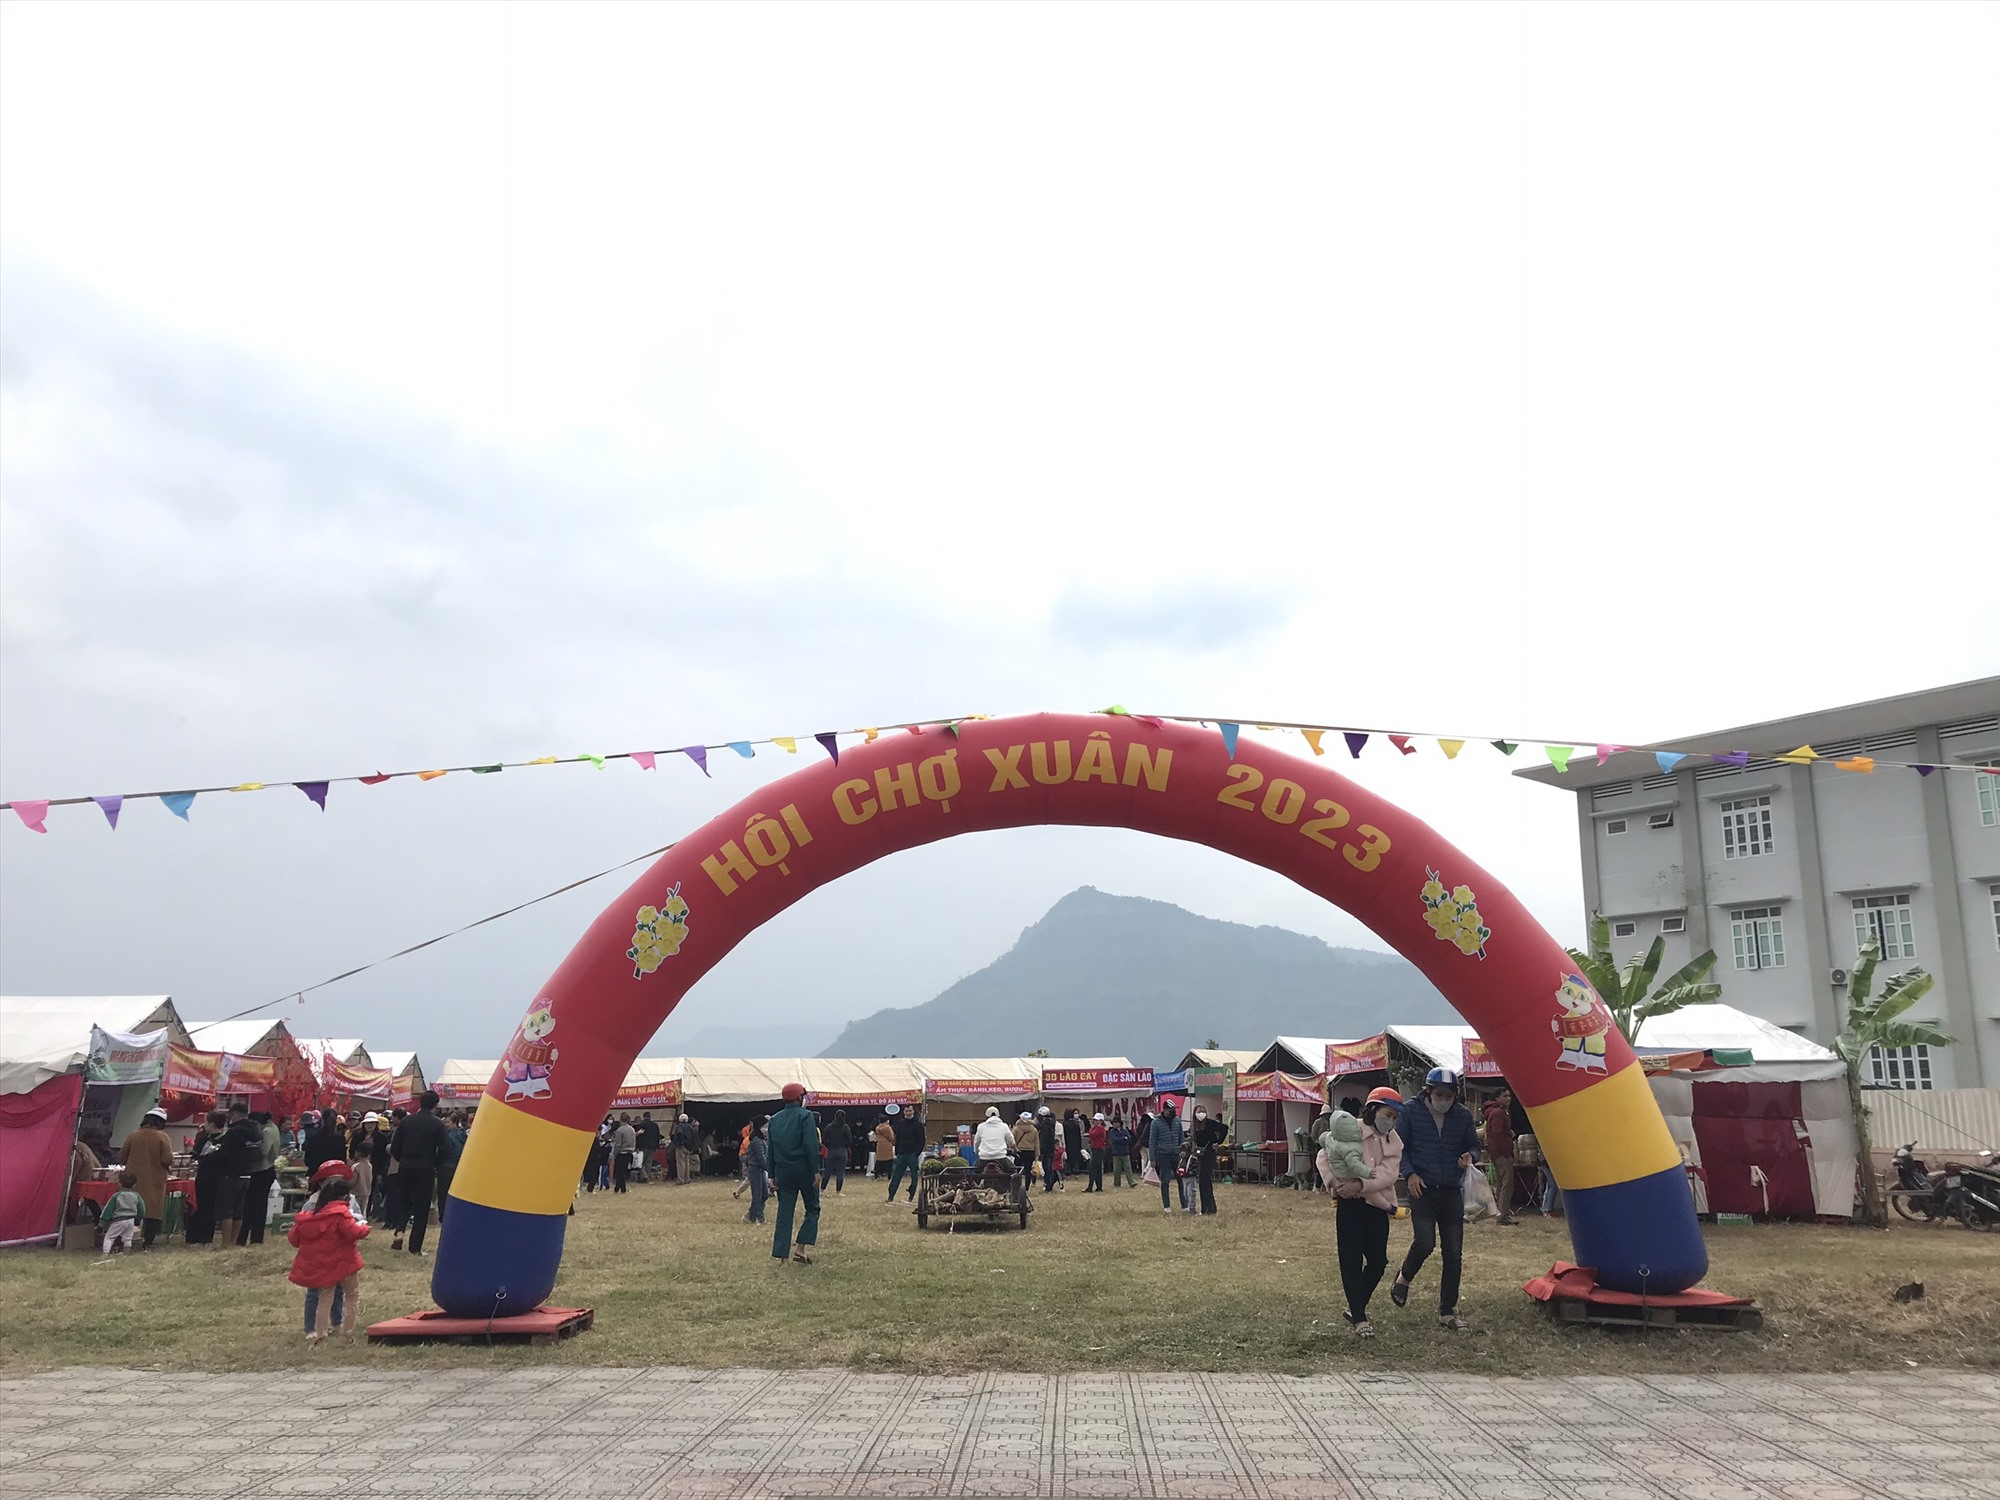 Hội Chợ Xuân 2023 được tổ chức tại thị trấn Lao Bảo